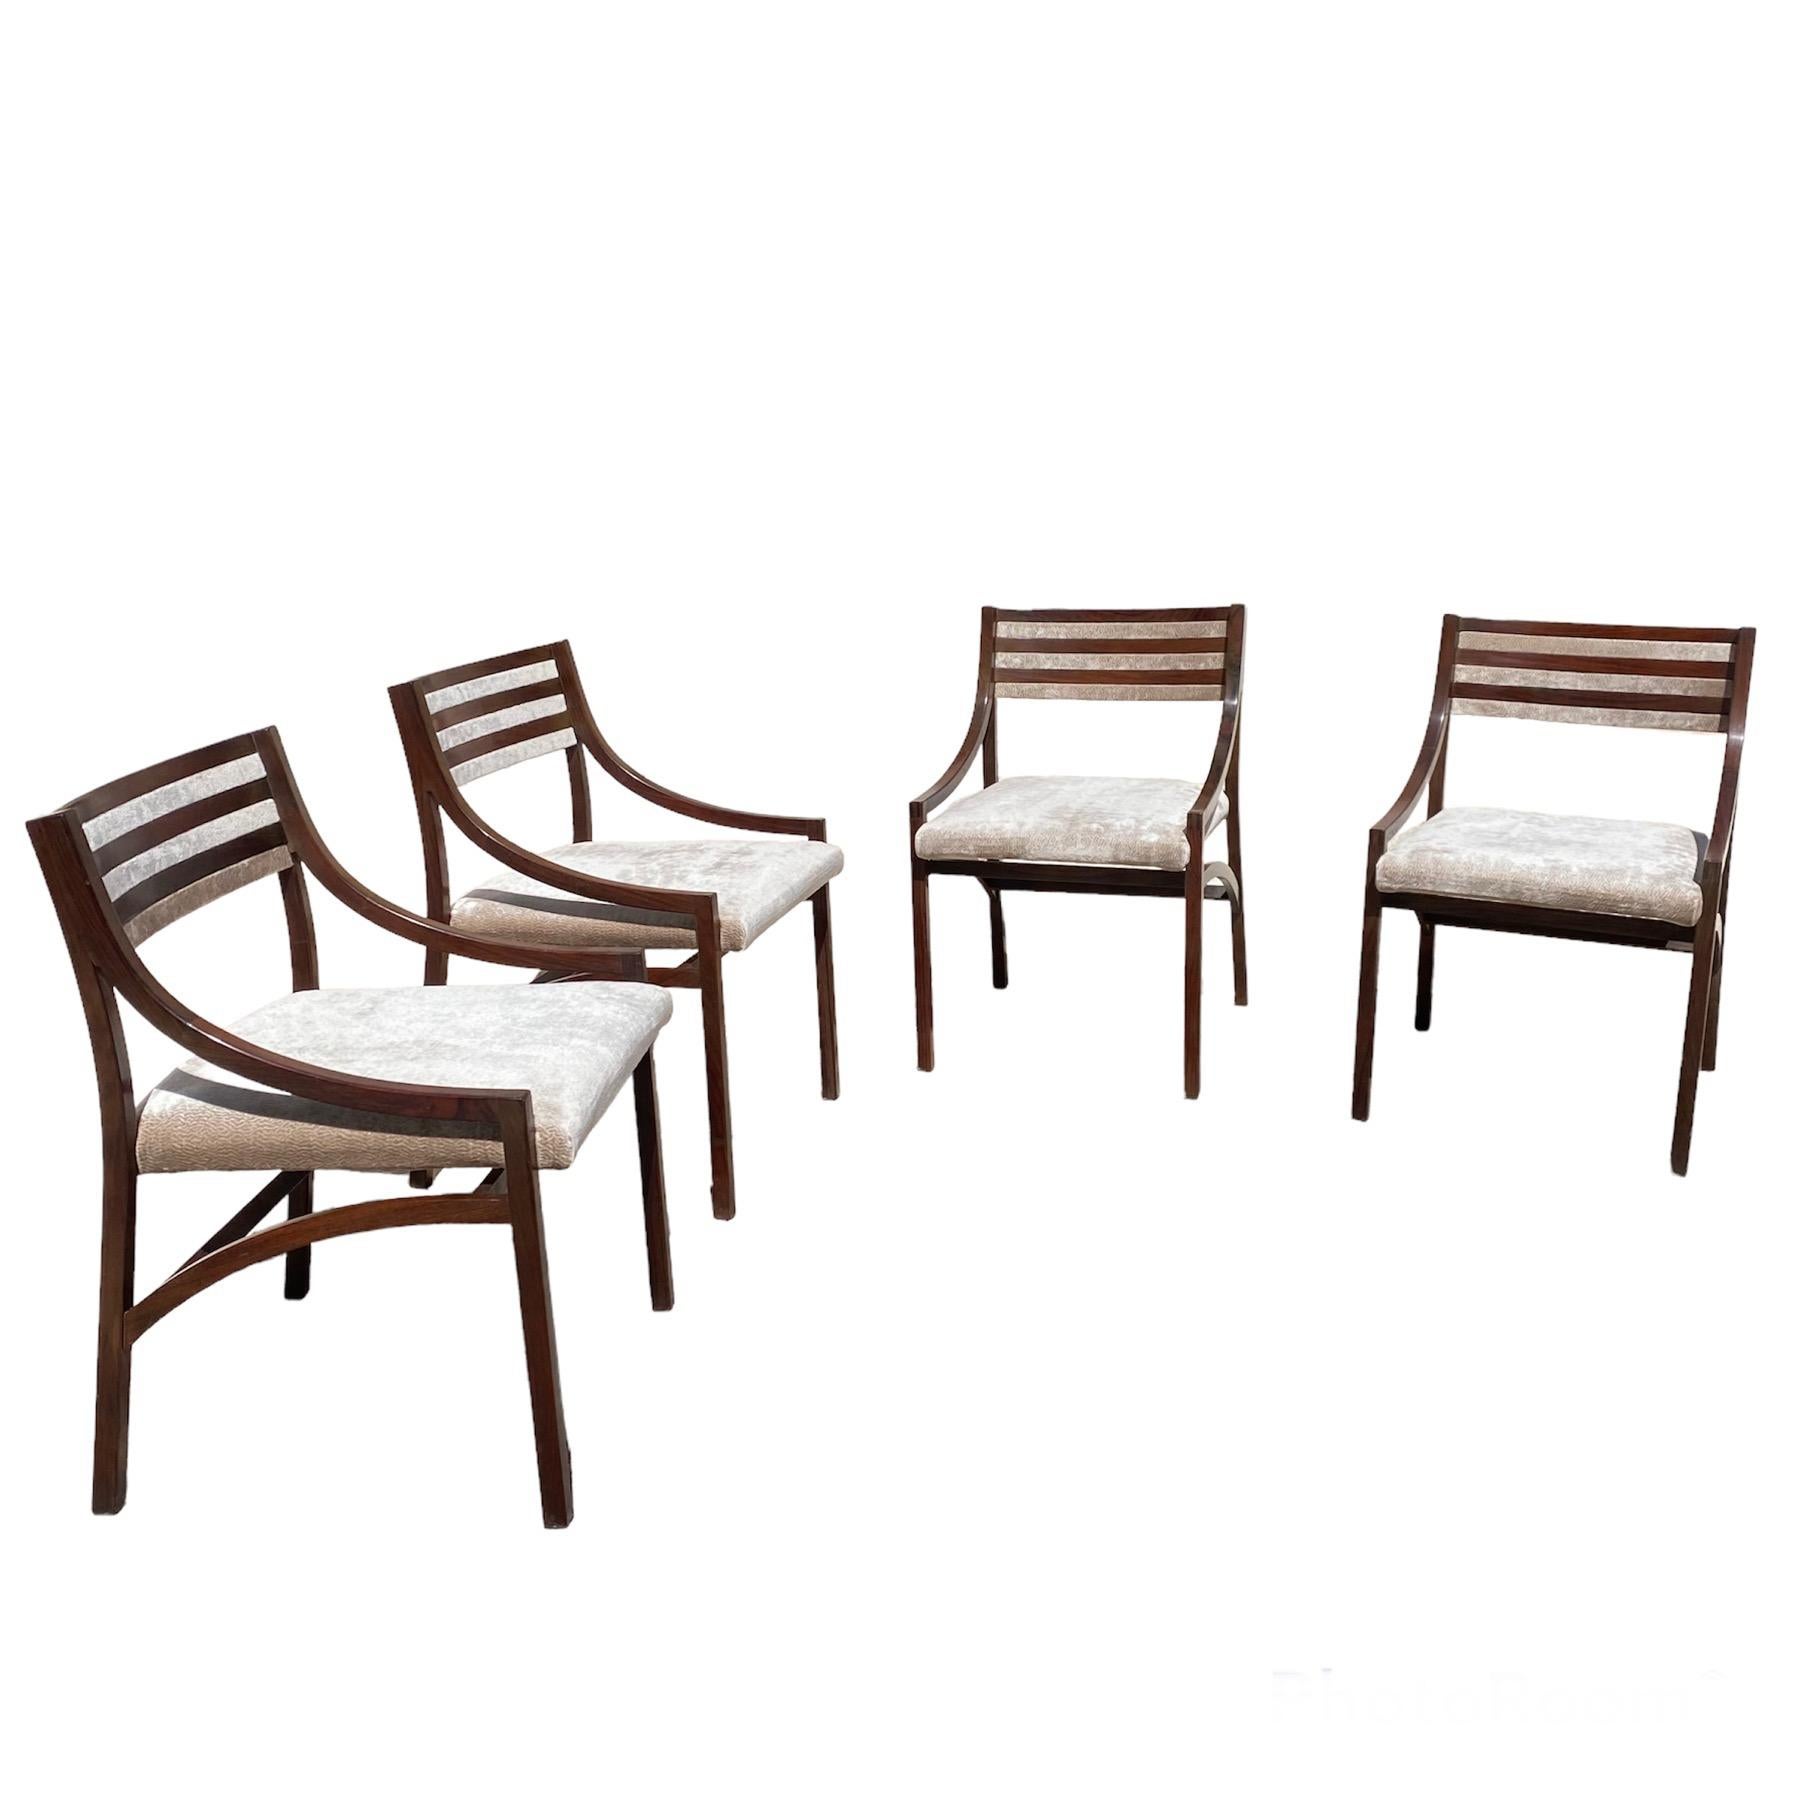 Satz von 4 Stühlen Modell 110, entworfen von Ico Parisi für Cassina, Italien 1961. 
 
Satz von 4 eleganten Stühlen, hergestellt von Ico Parisi für Cassina. 
Die Stühle sind in perfektem Zustand, das Palissandro-Holz wurde poliert und die Sitze